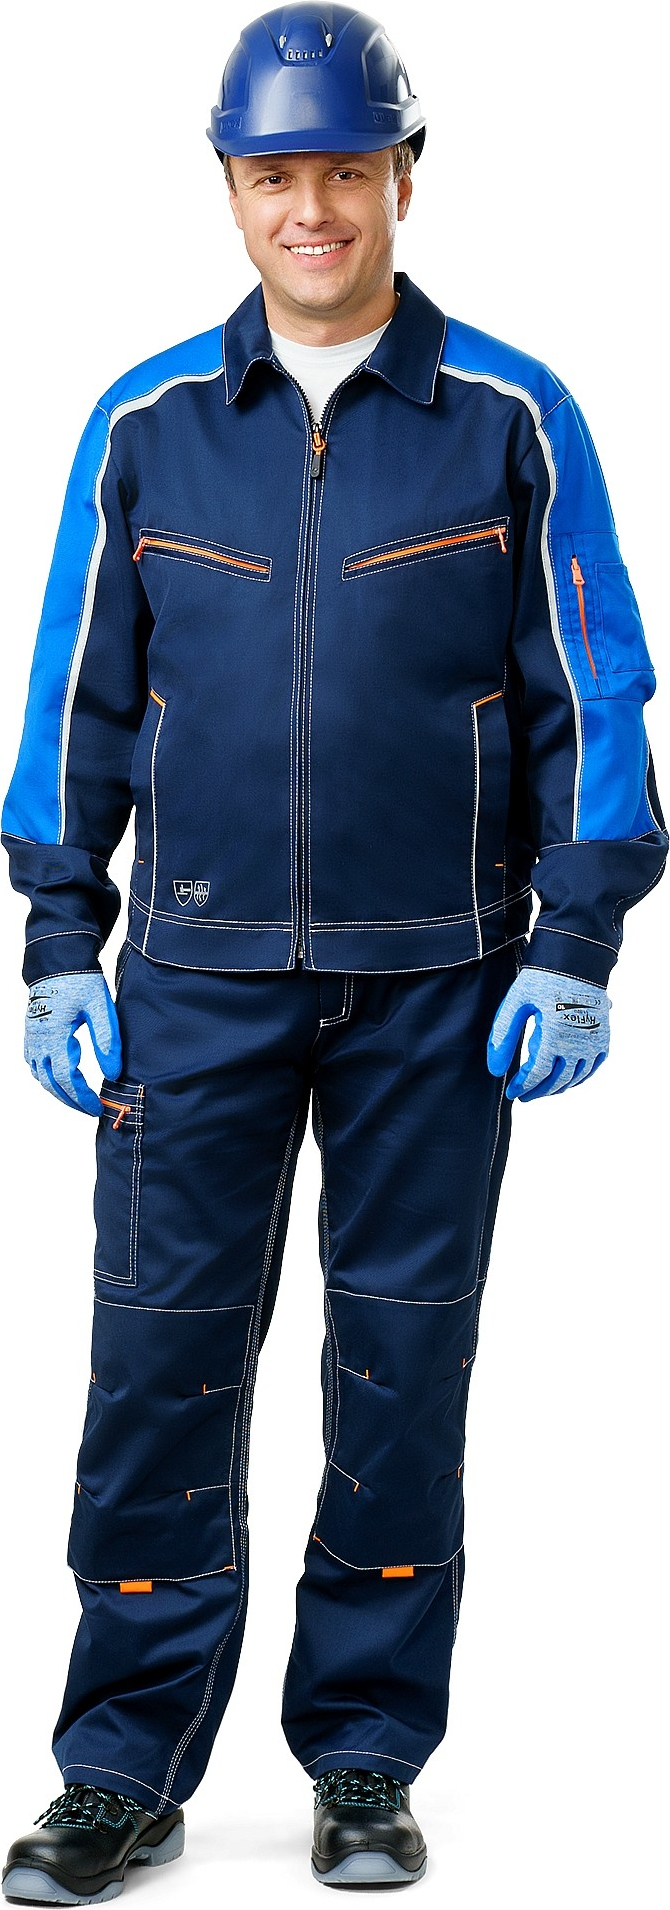 куртка мужская зимняя скаймастер